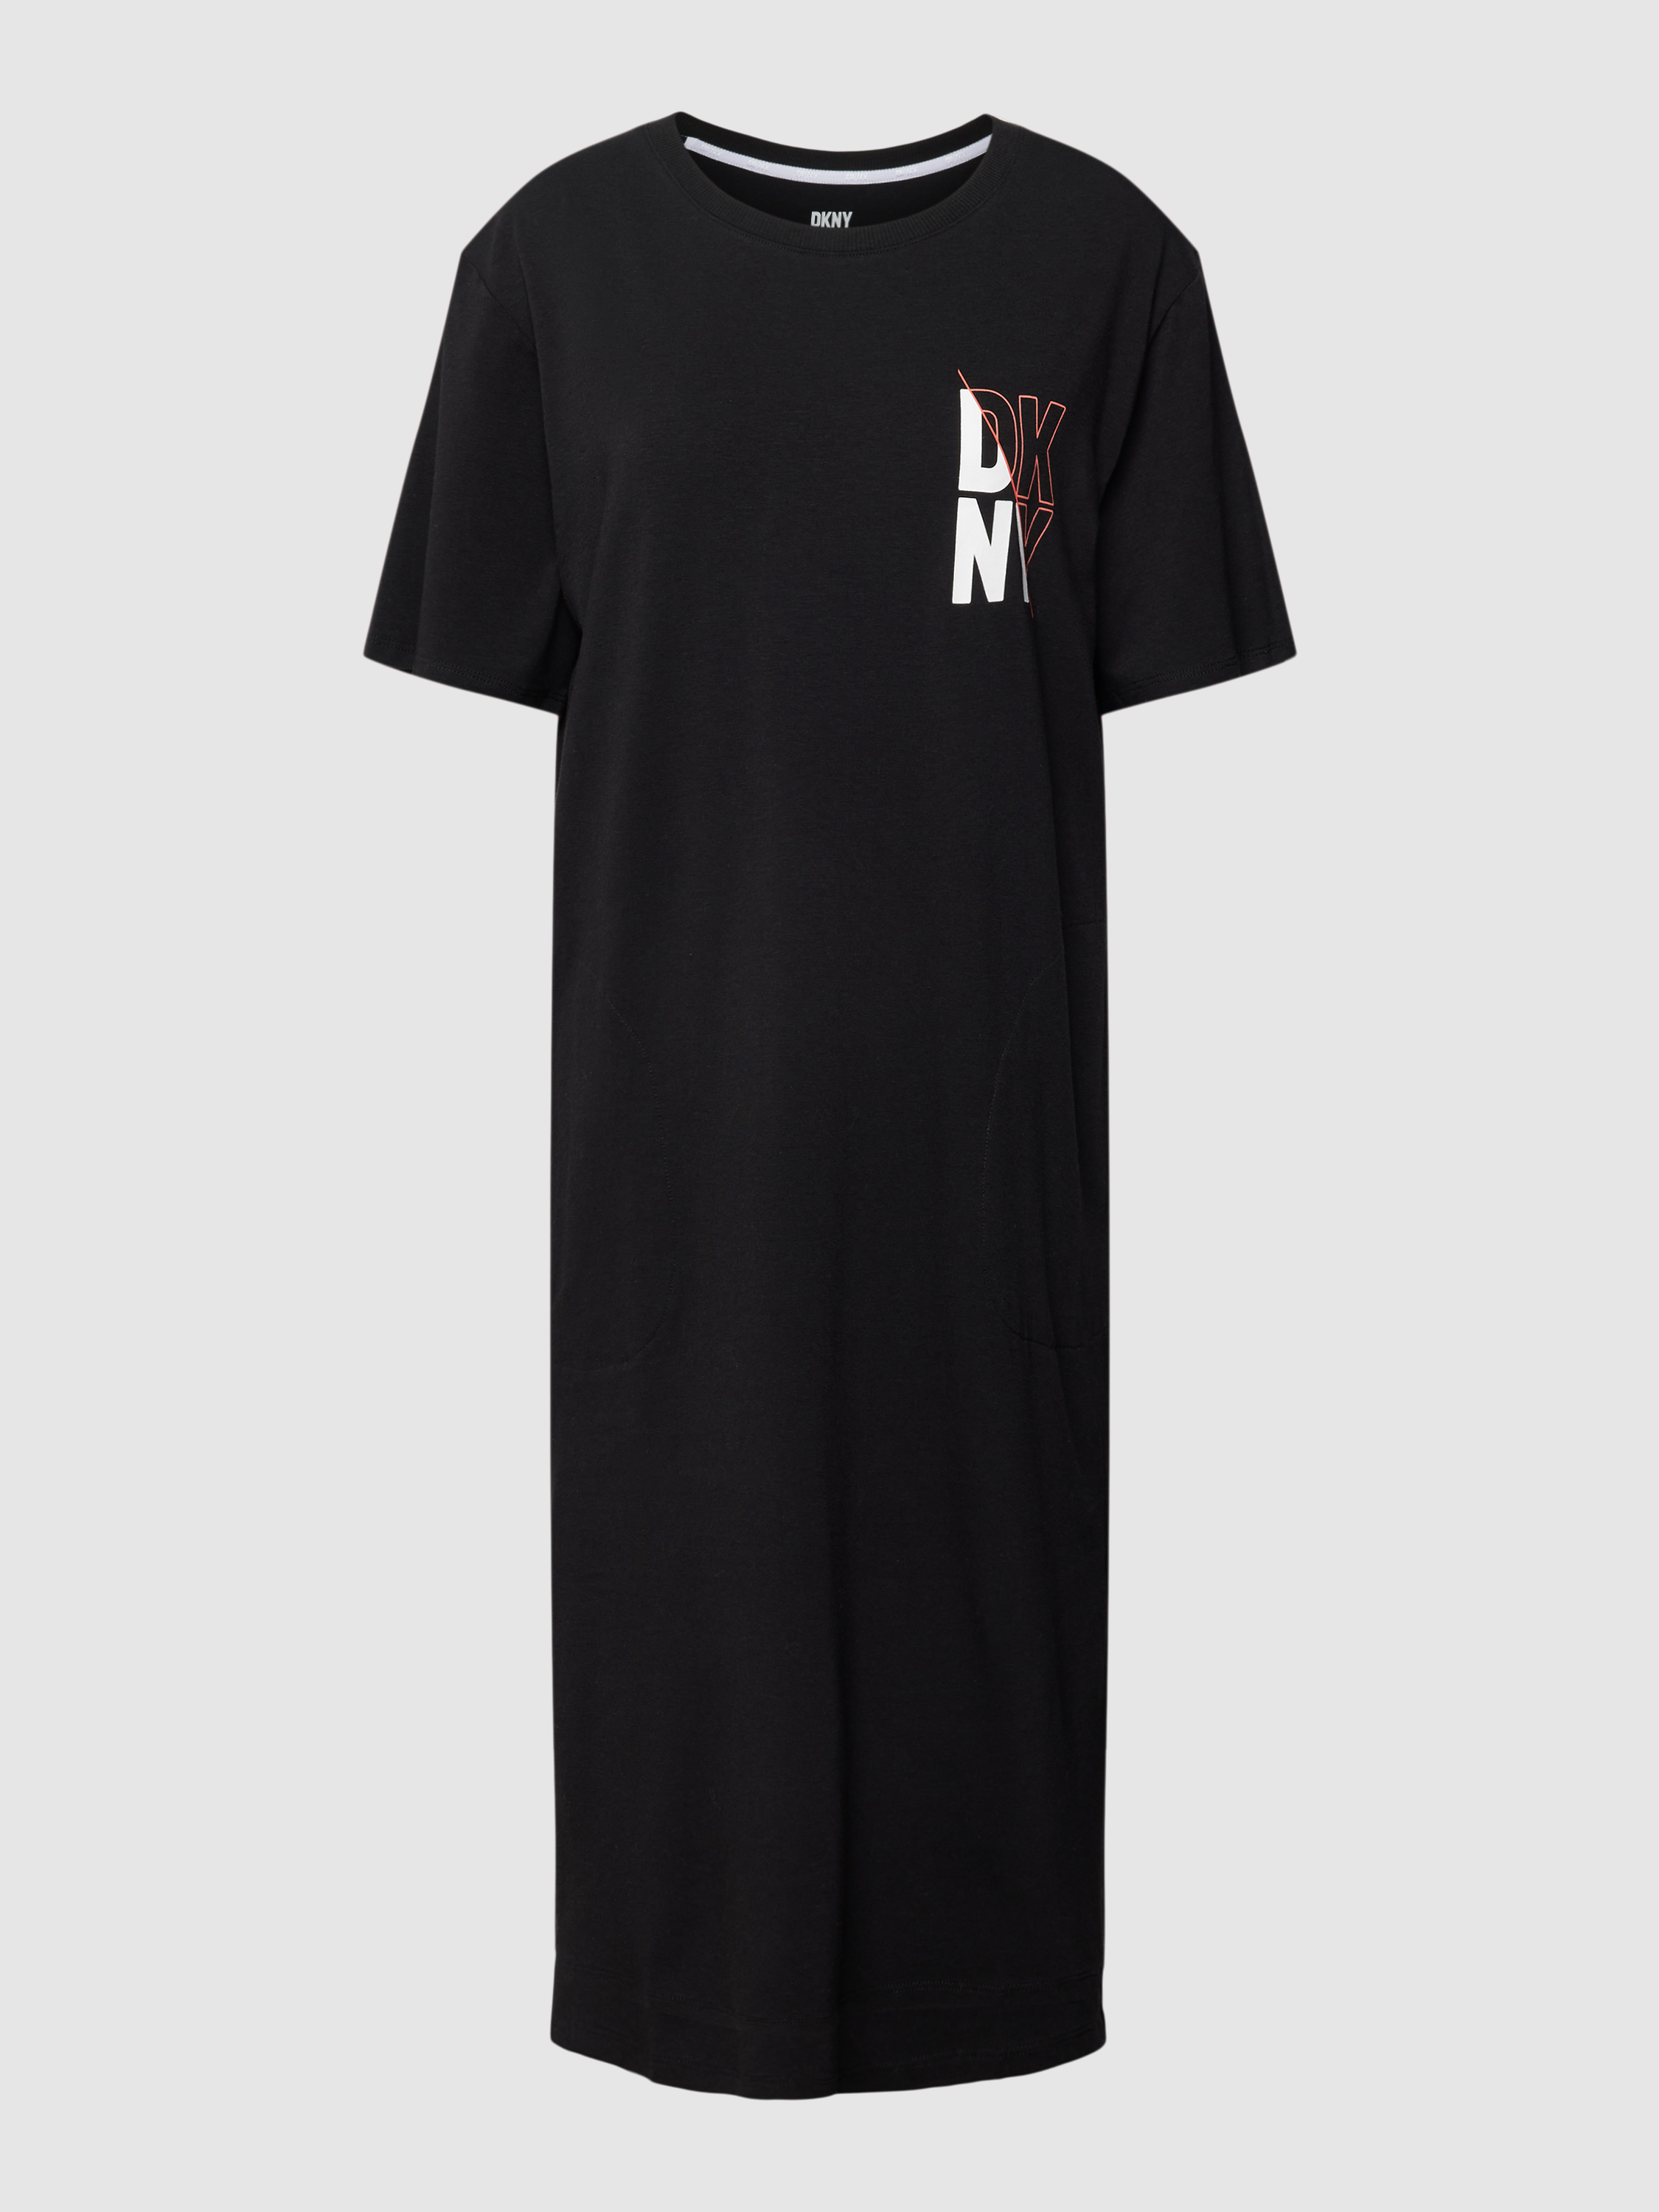 Платье домашнее женское DKNY 1785739 черное M (доставка из-за рубежа)